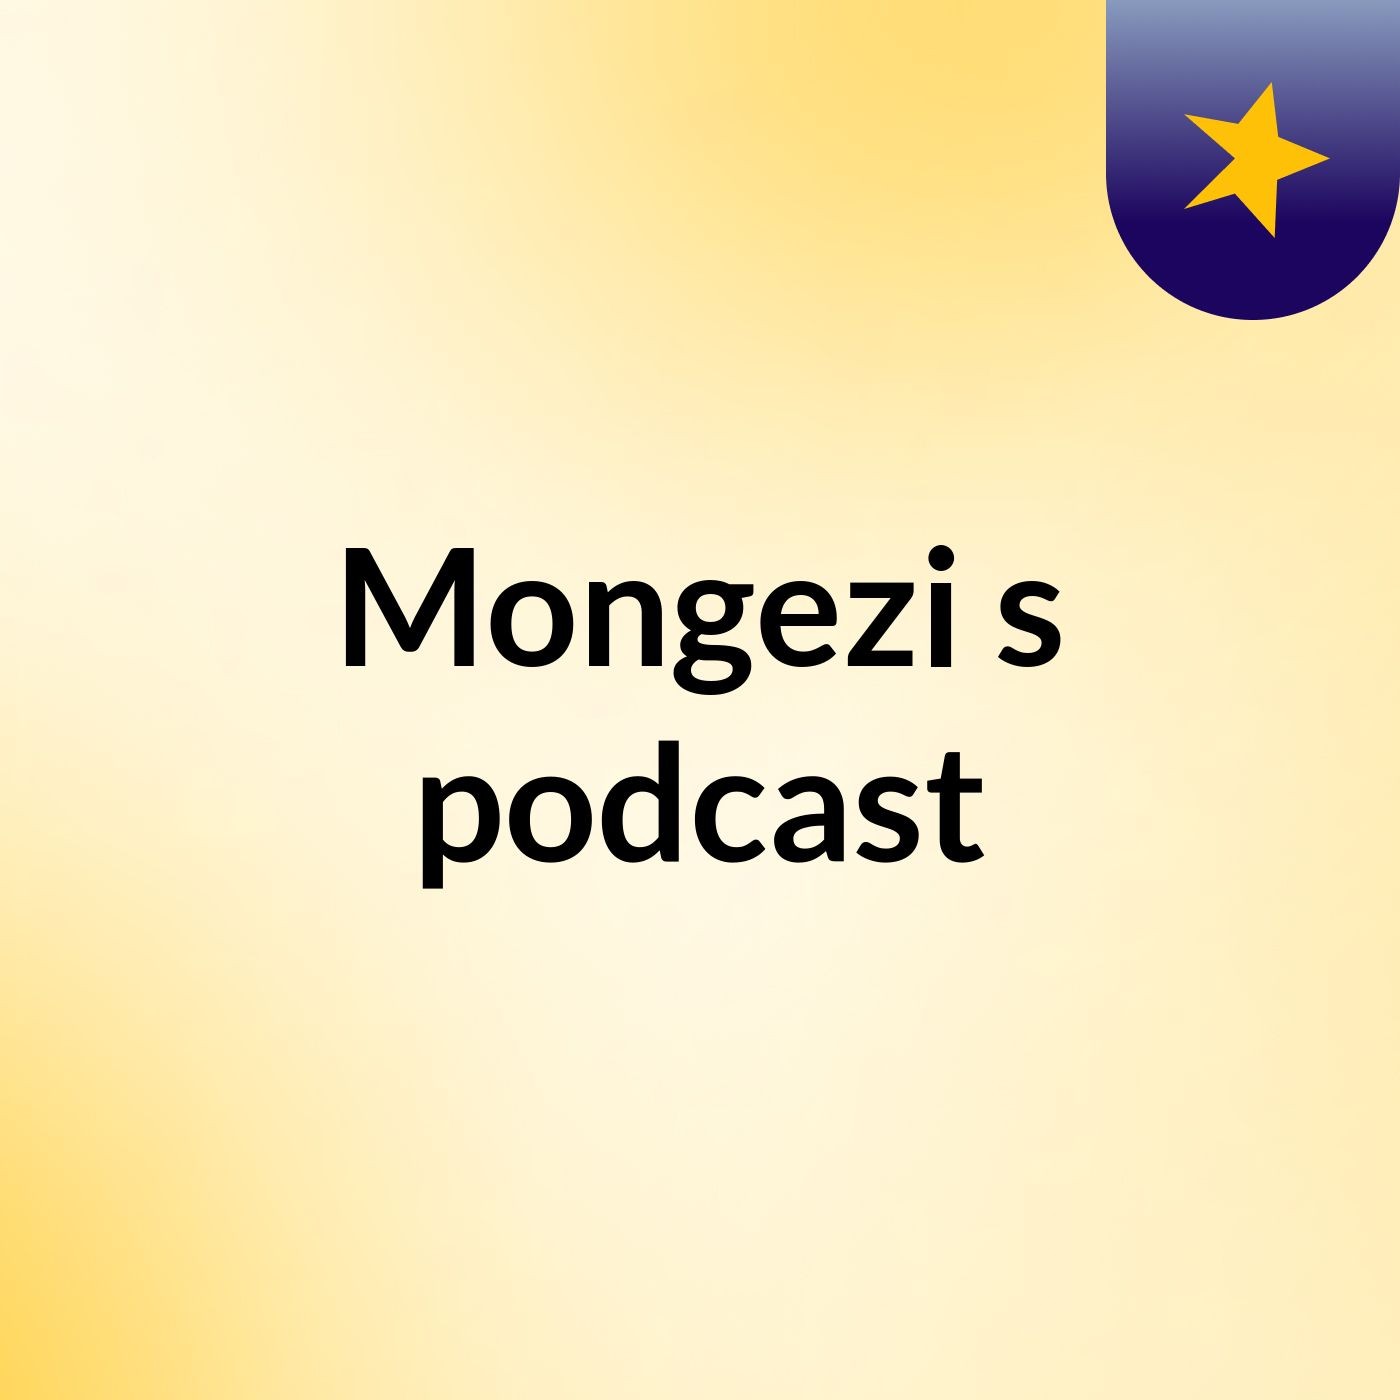 Mongezi's podcast